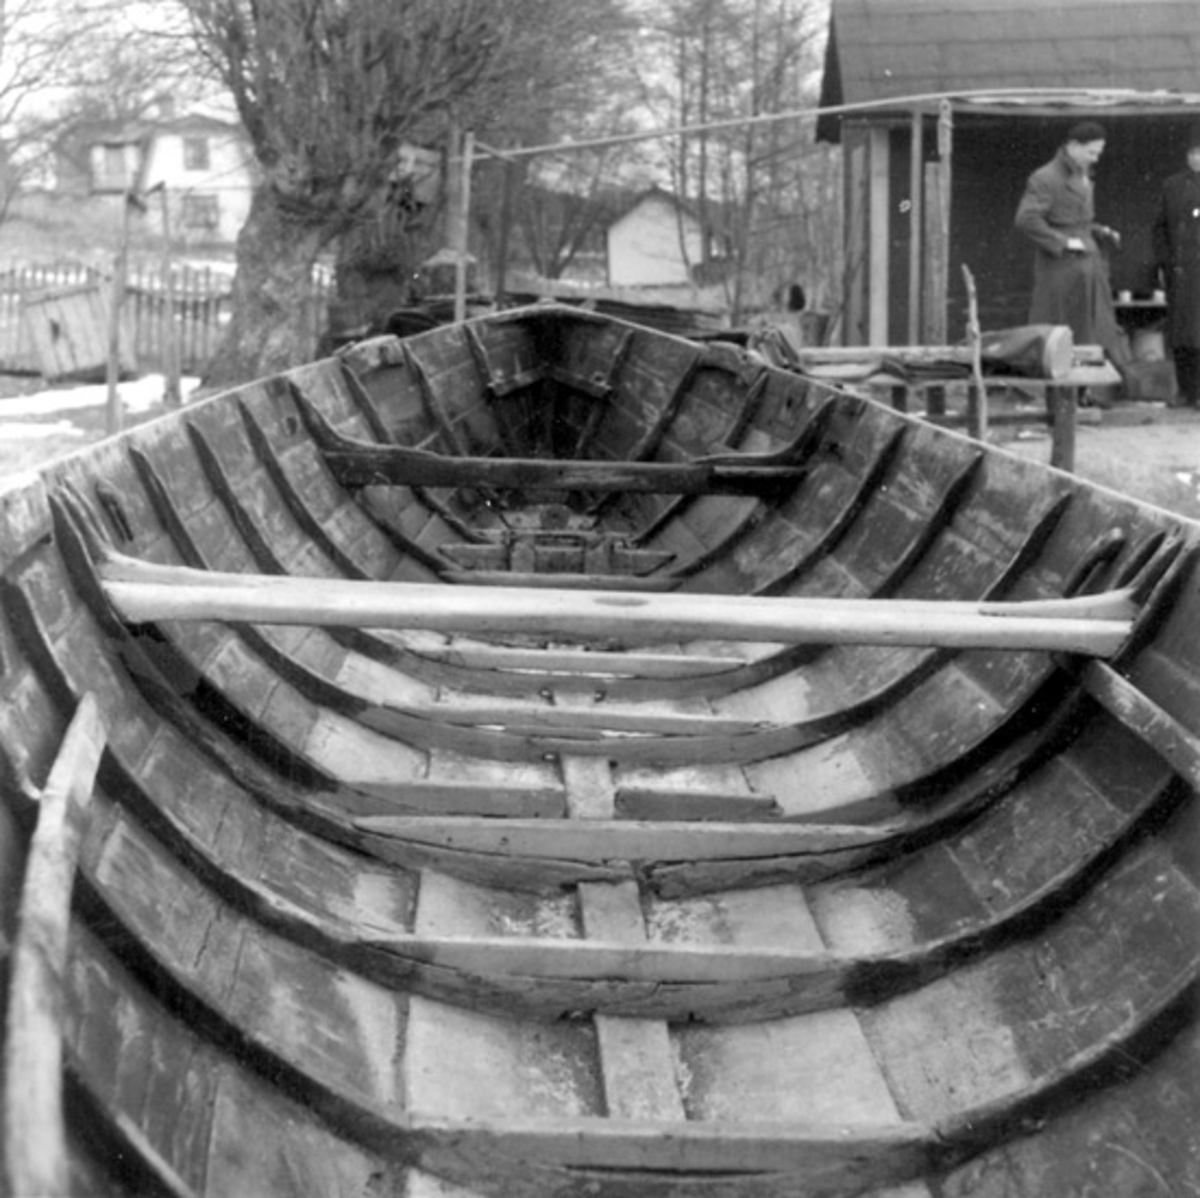 Skrivet på vidhängande papper: Långbåt, byggd av Jansson på Stegesund år 1892.